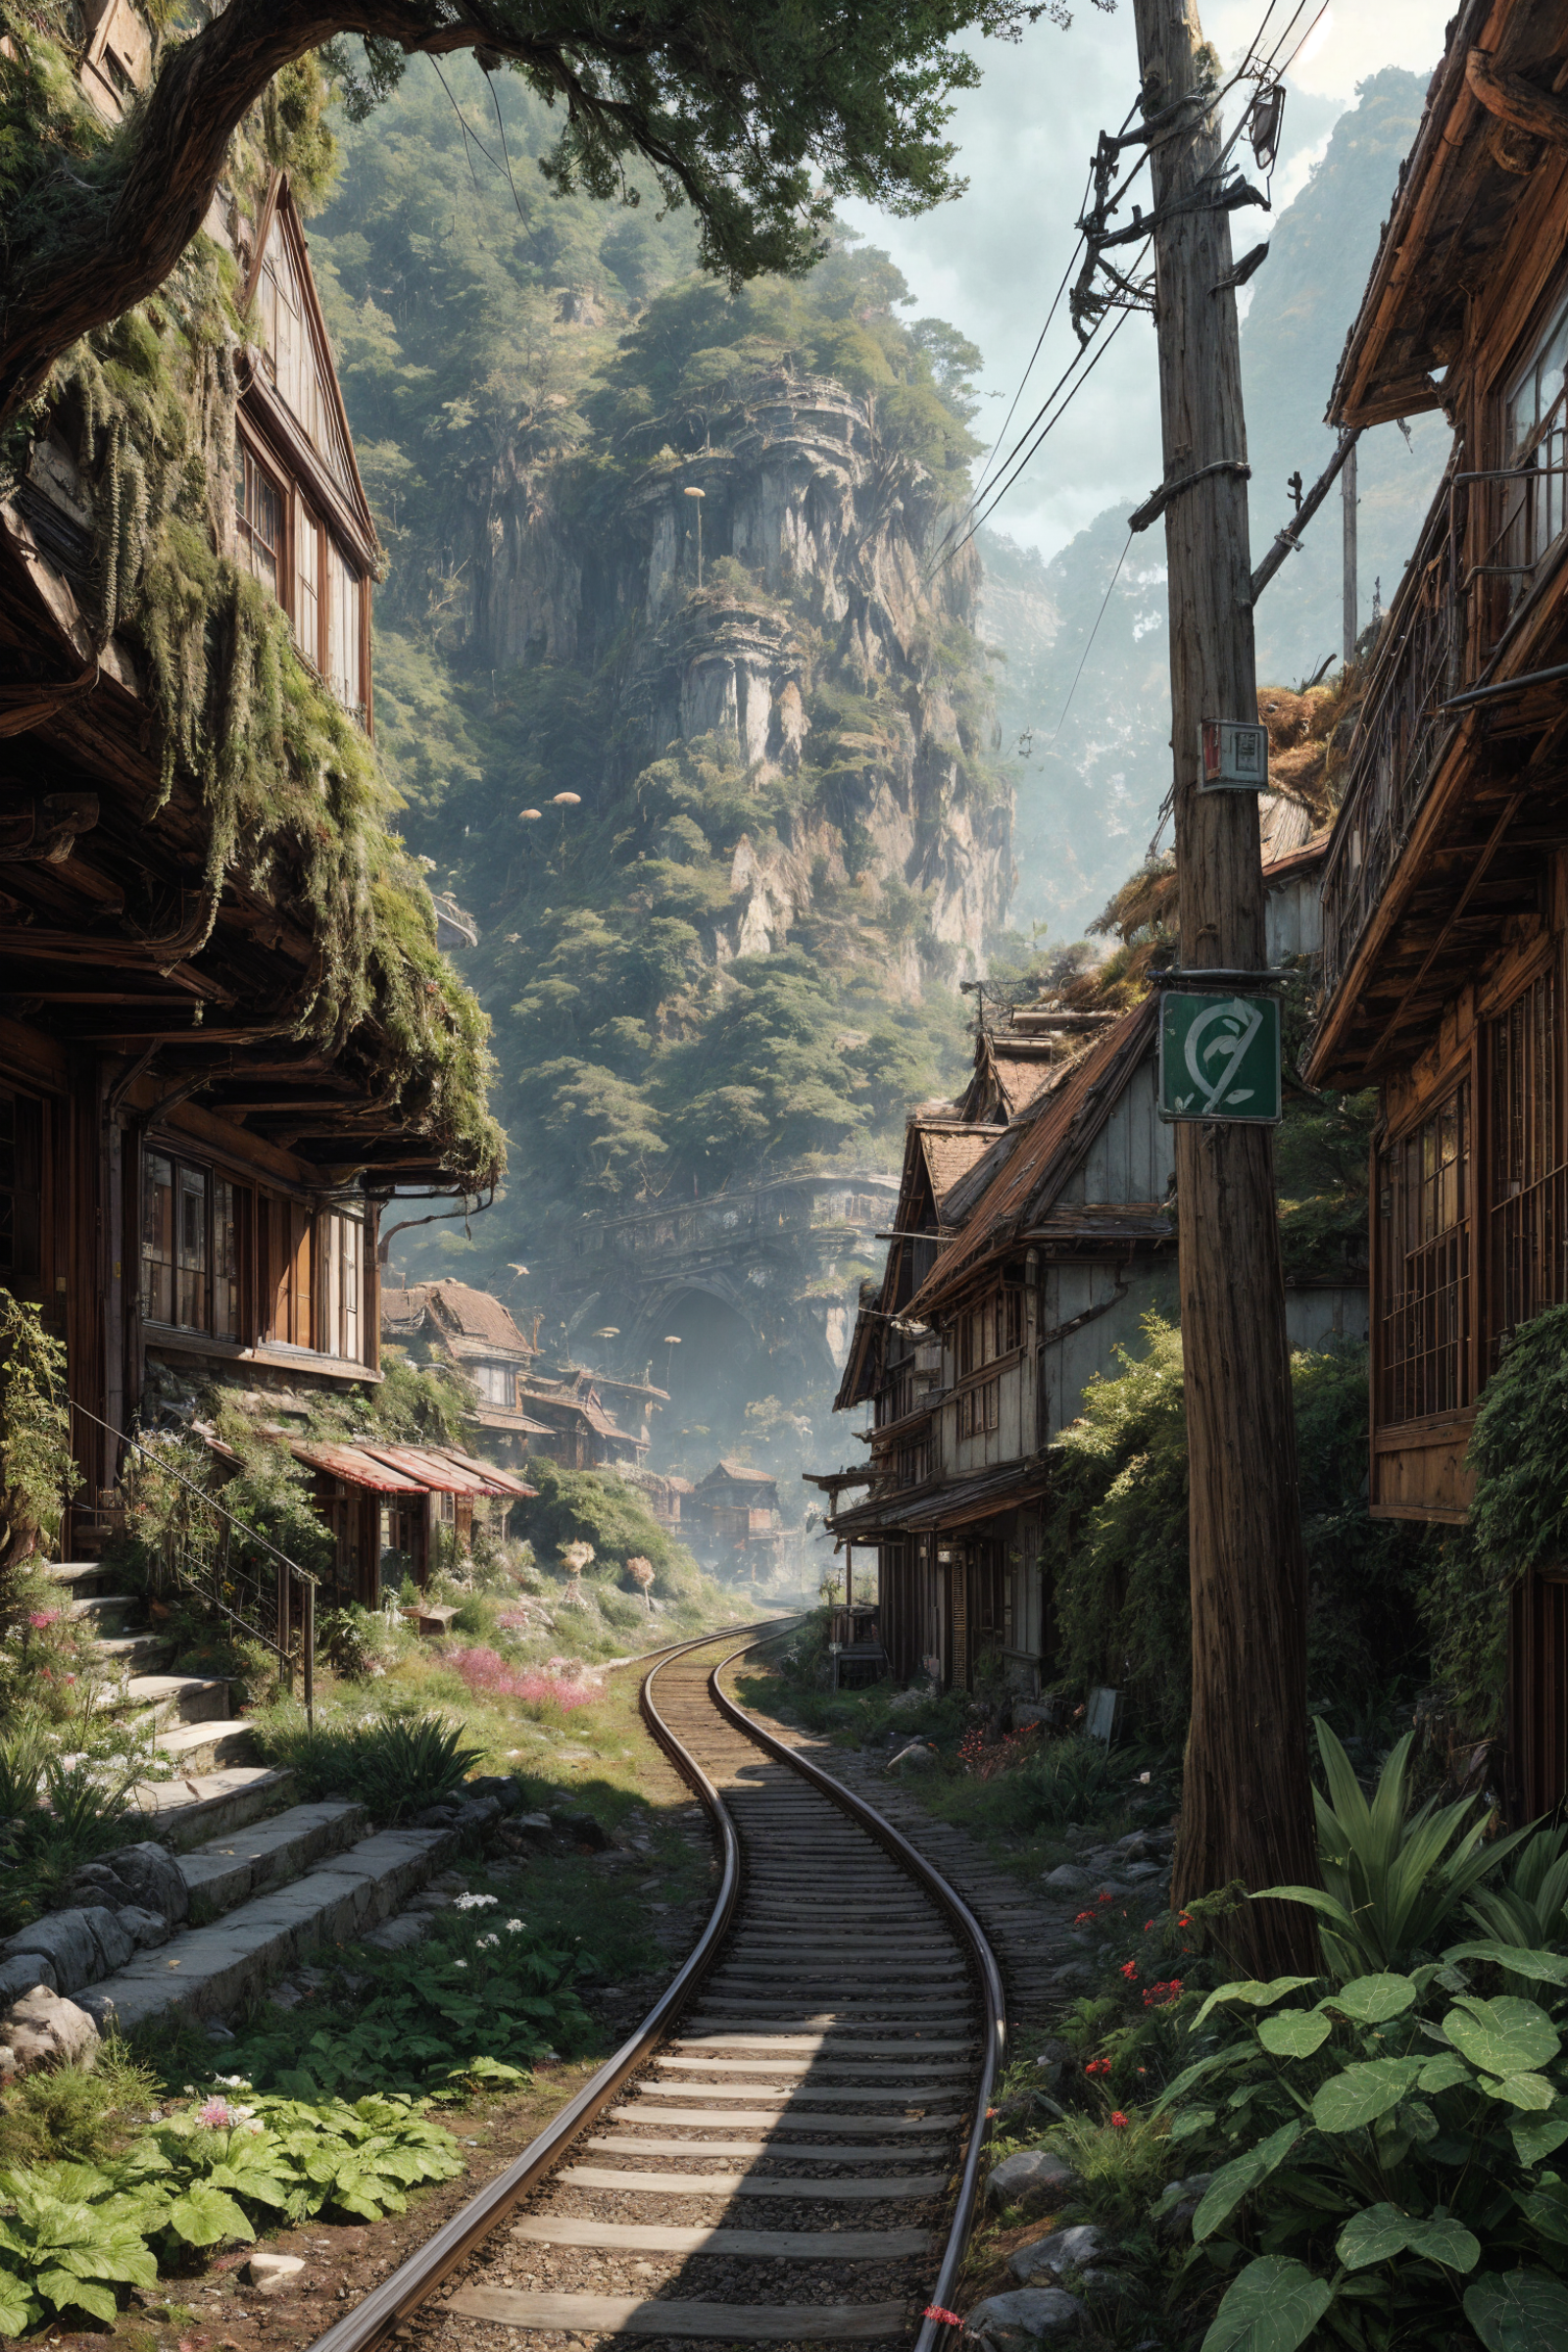 A Railroad Trail Through a Wooded Mountain Town